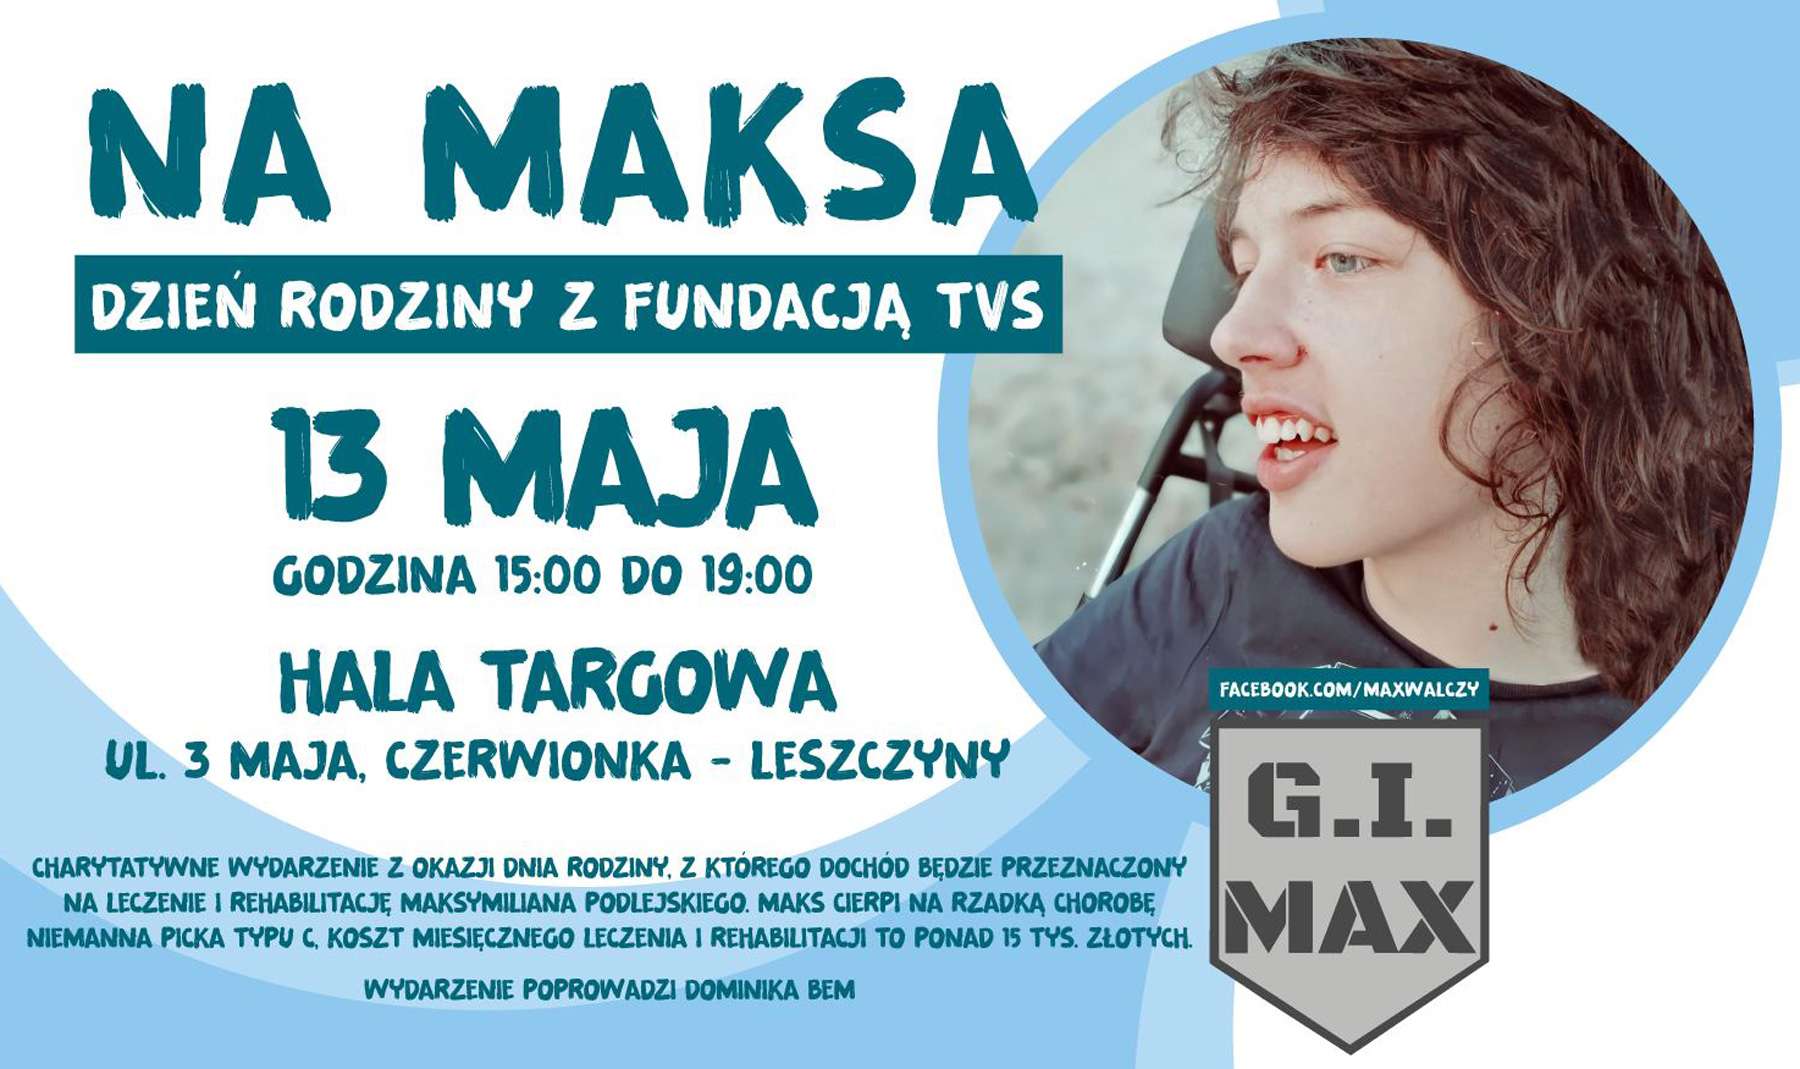 FB / G.I.MAX - Max Walczy